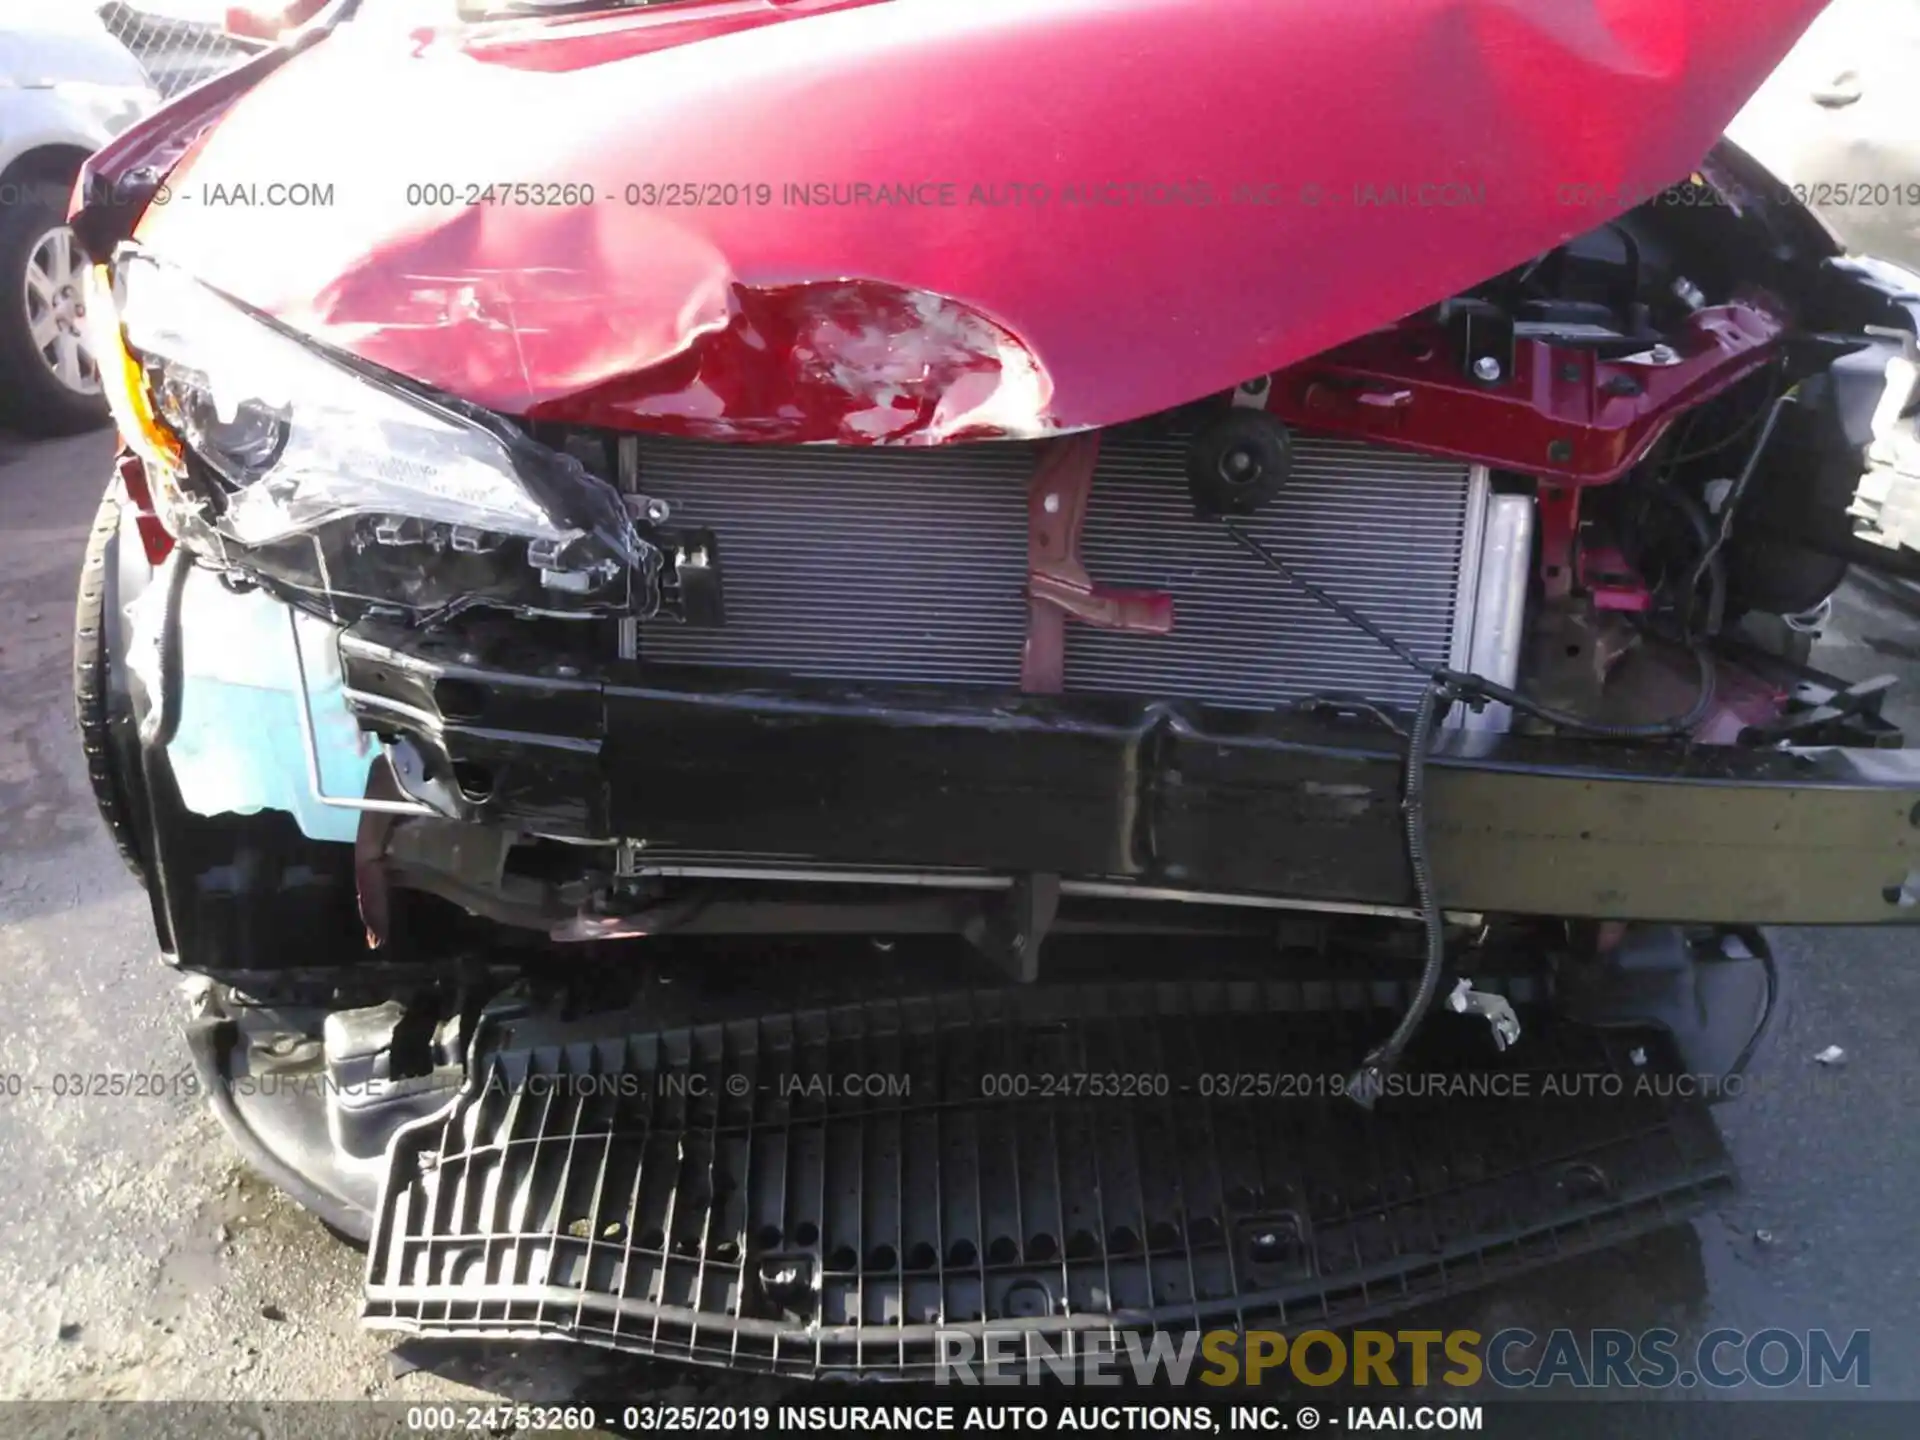 6 Photograph of a damaged car 5YFBURHE9KP915729 TOYOTA COROLLA 2019